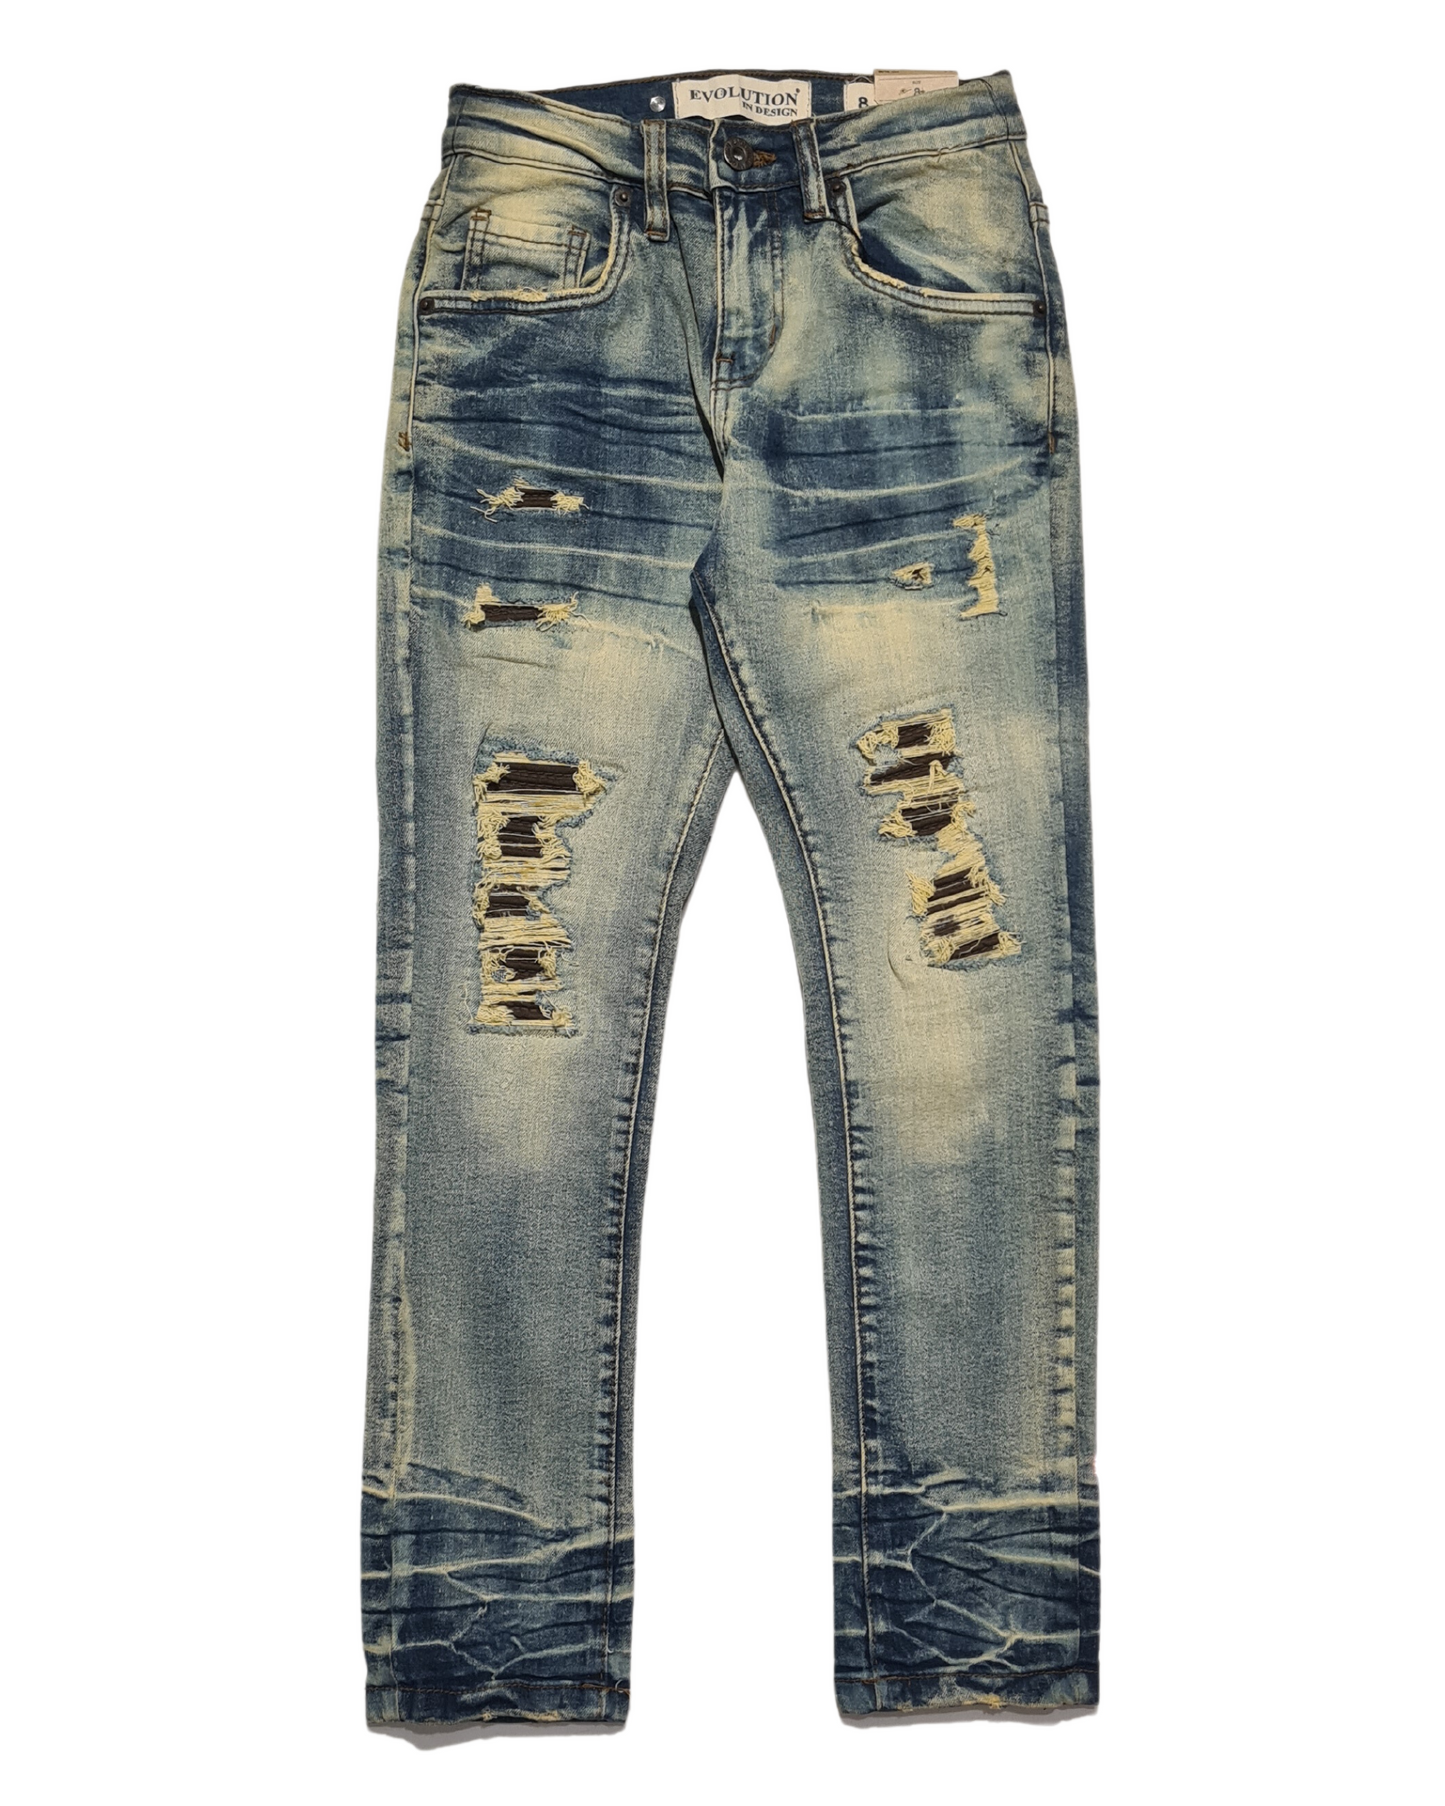 Kids Jeans 33901